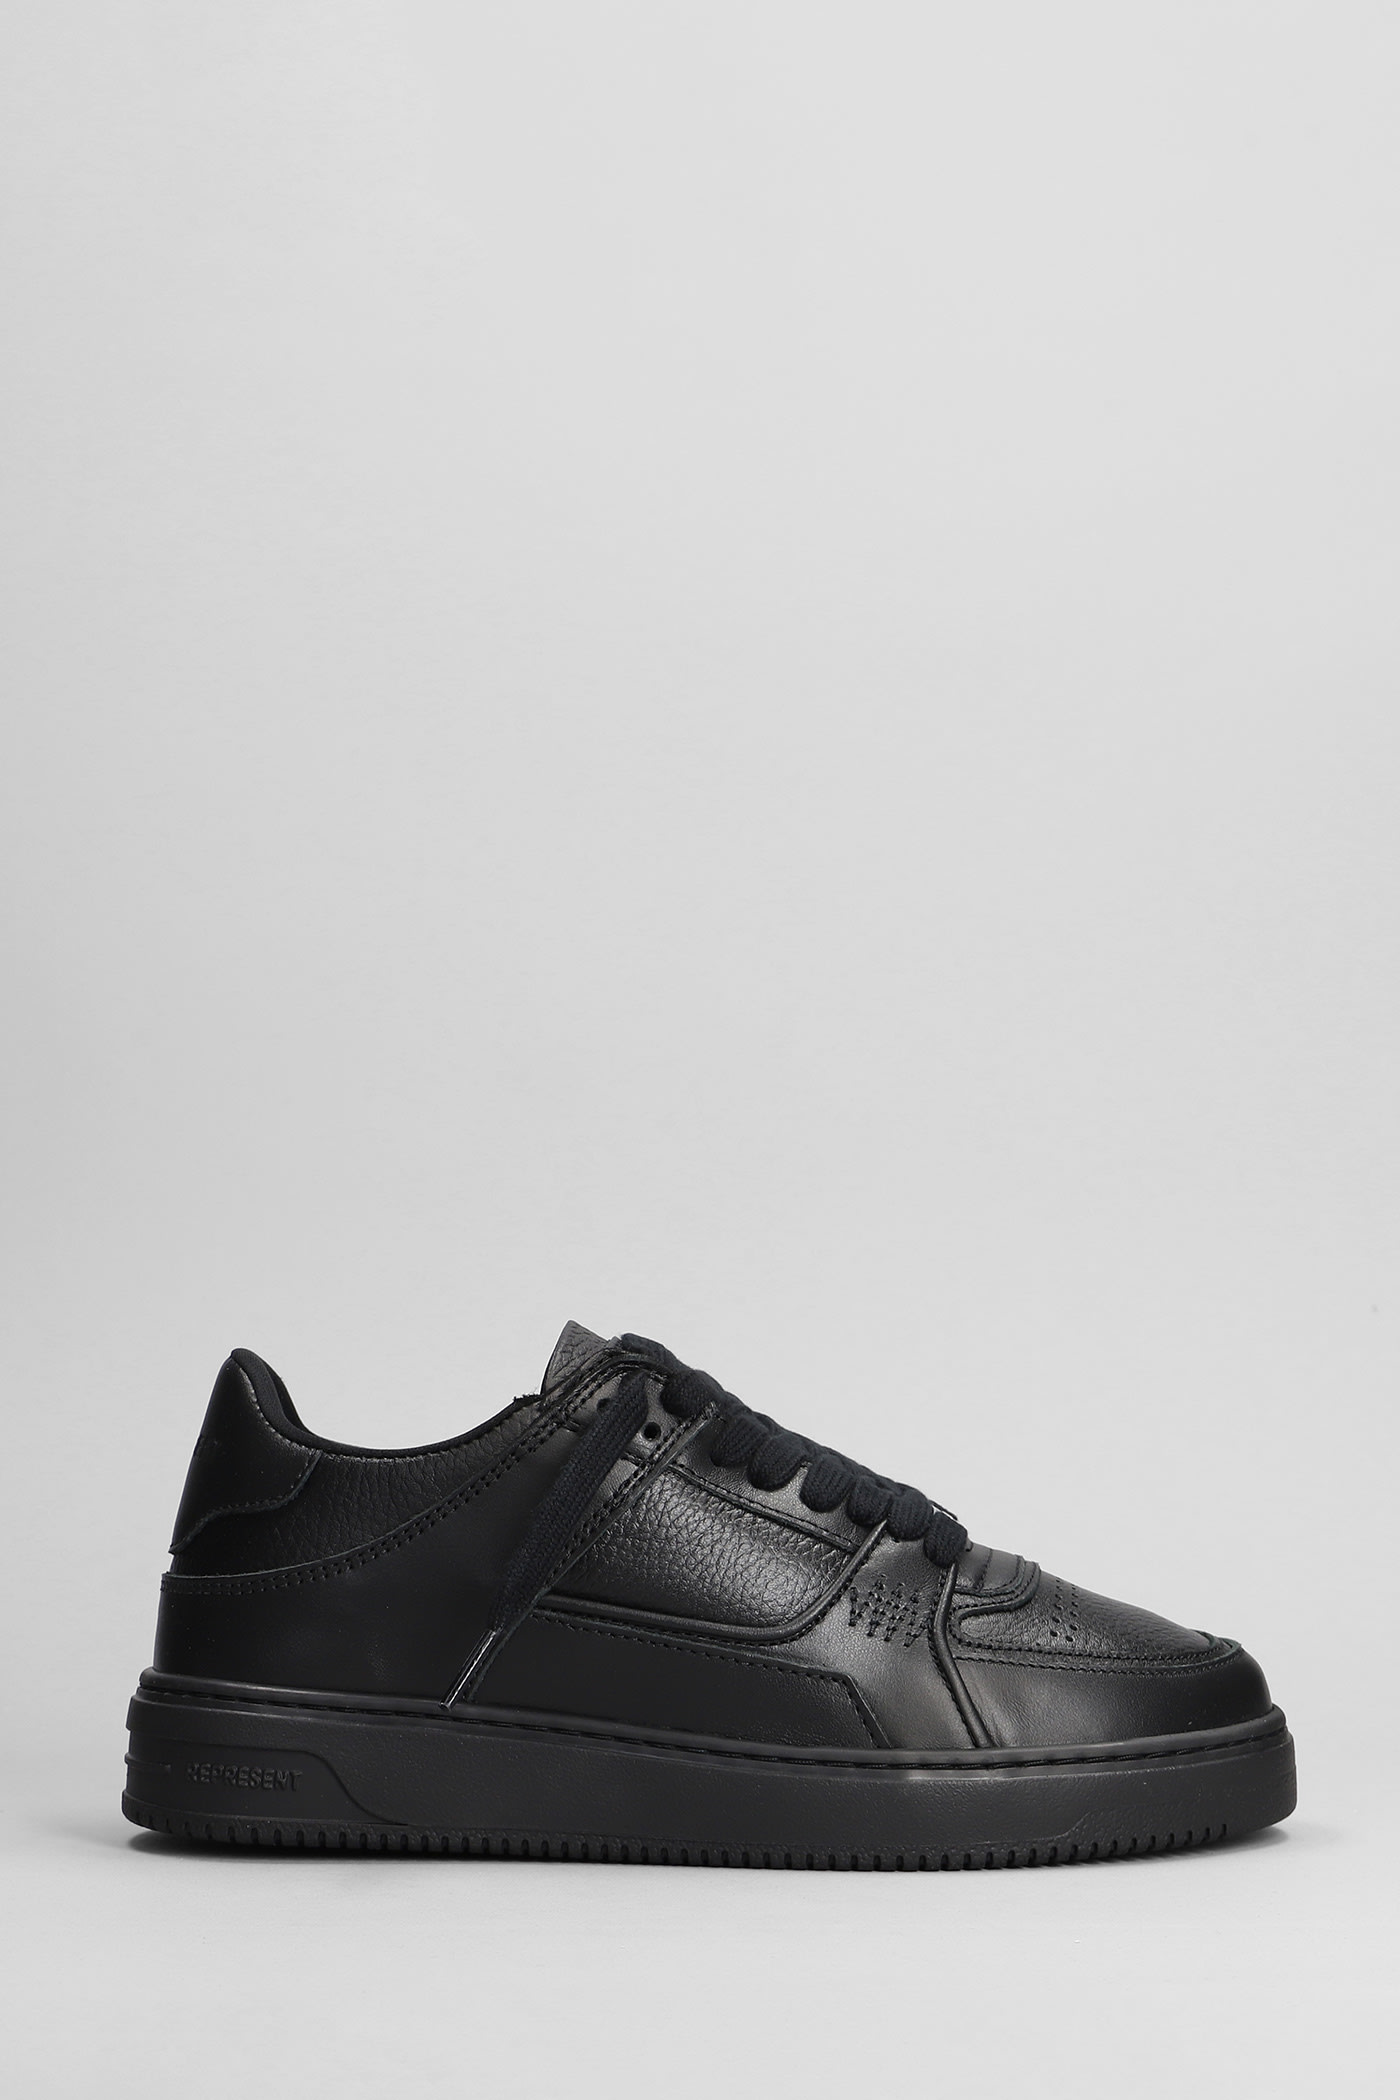 Apex Sneakers In Black Leather Sneakers